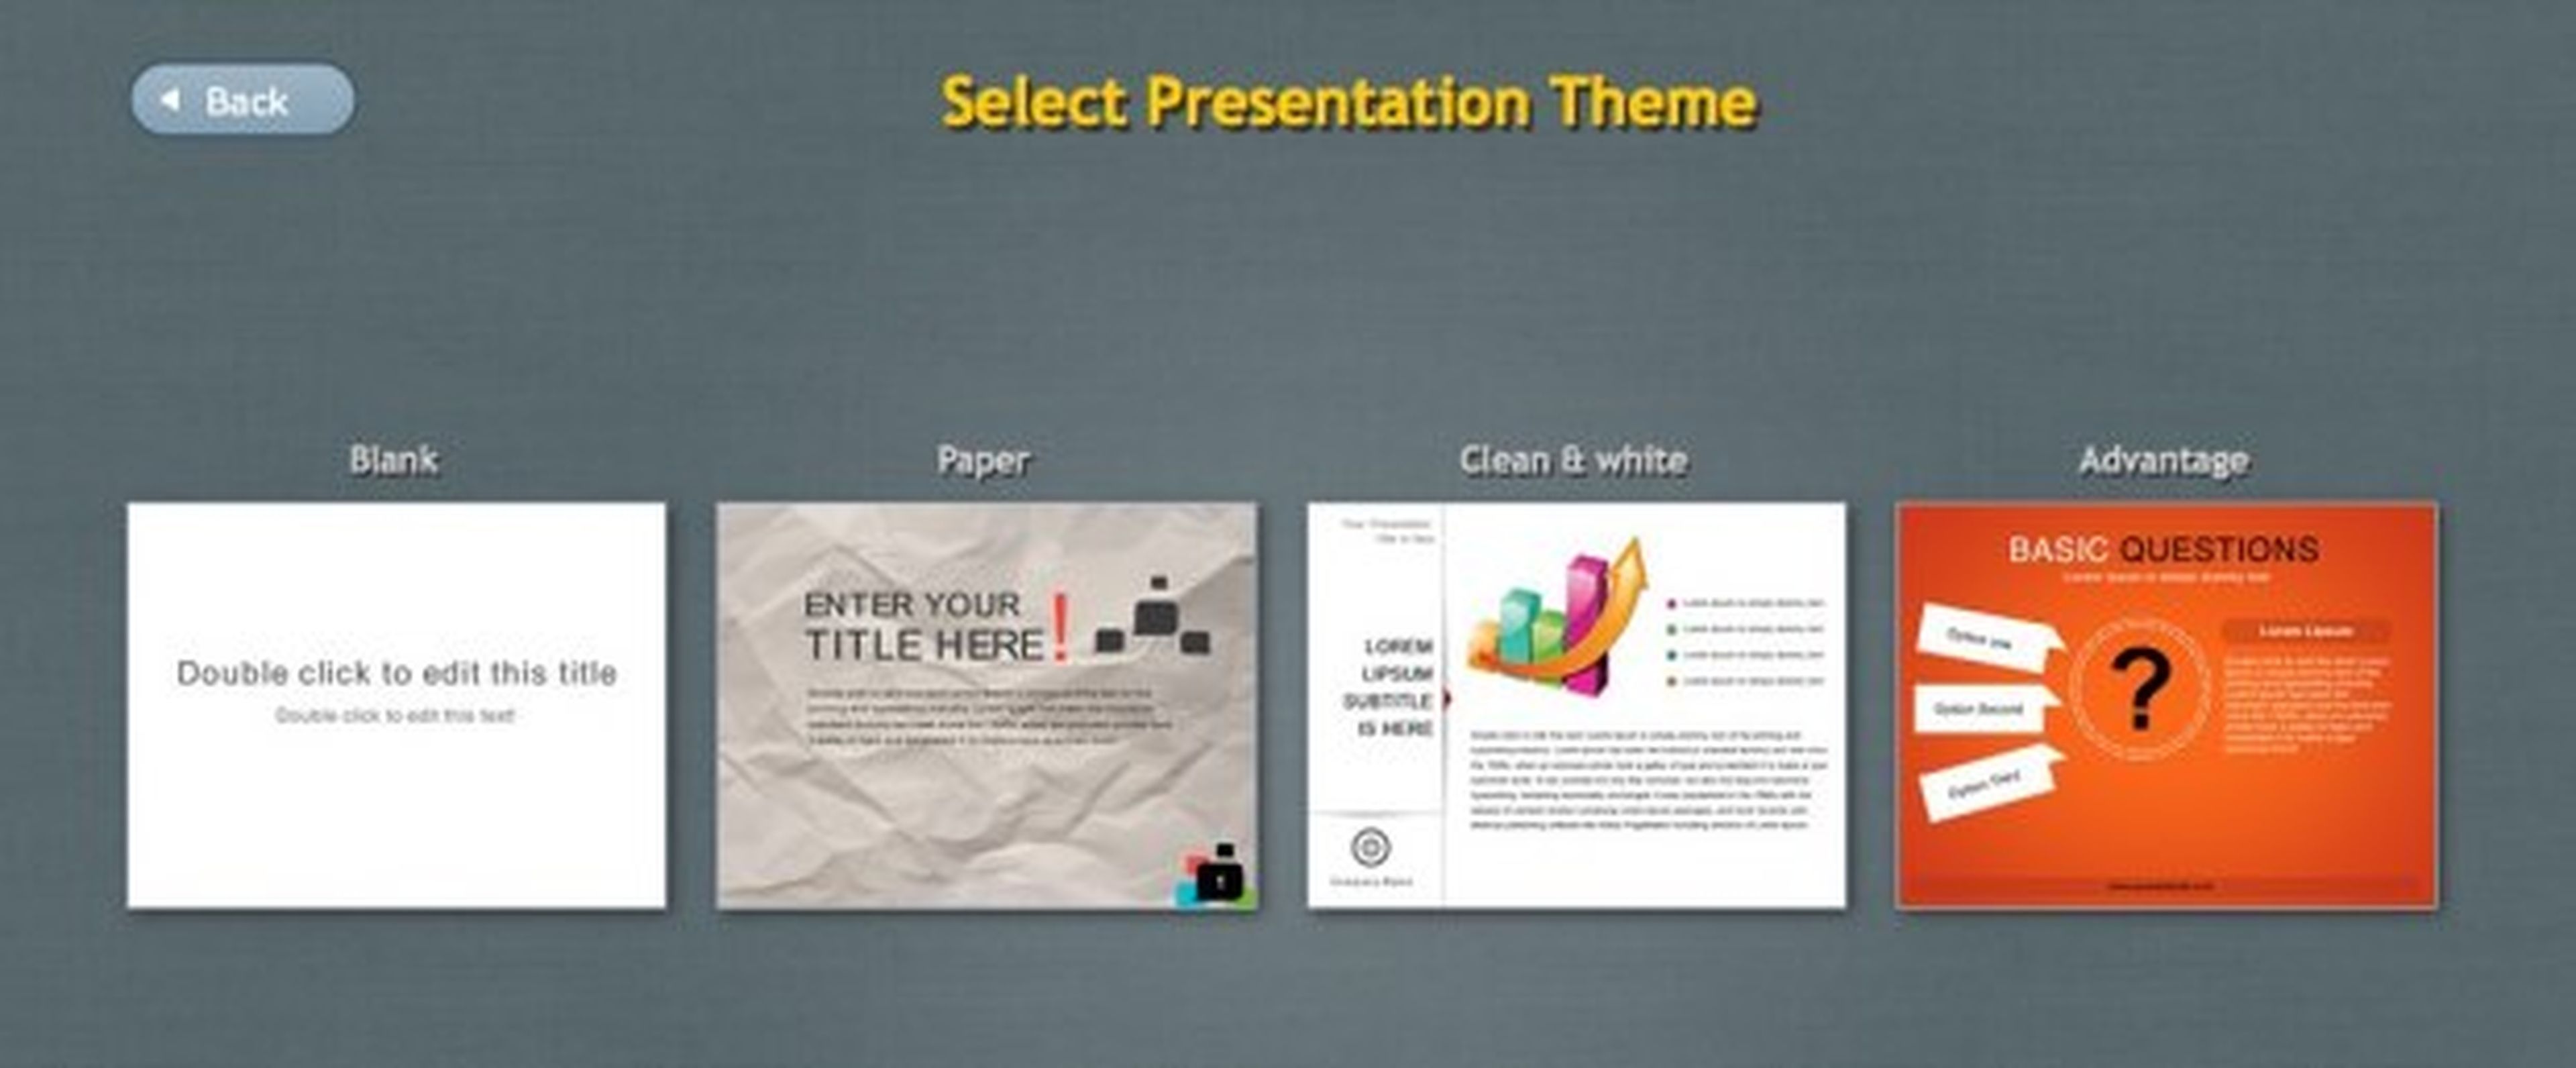 Crea una nueva presentación en HTML 5 en Presenter